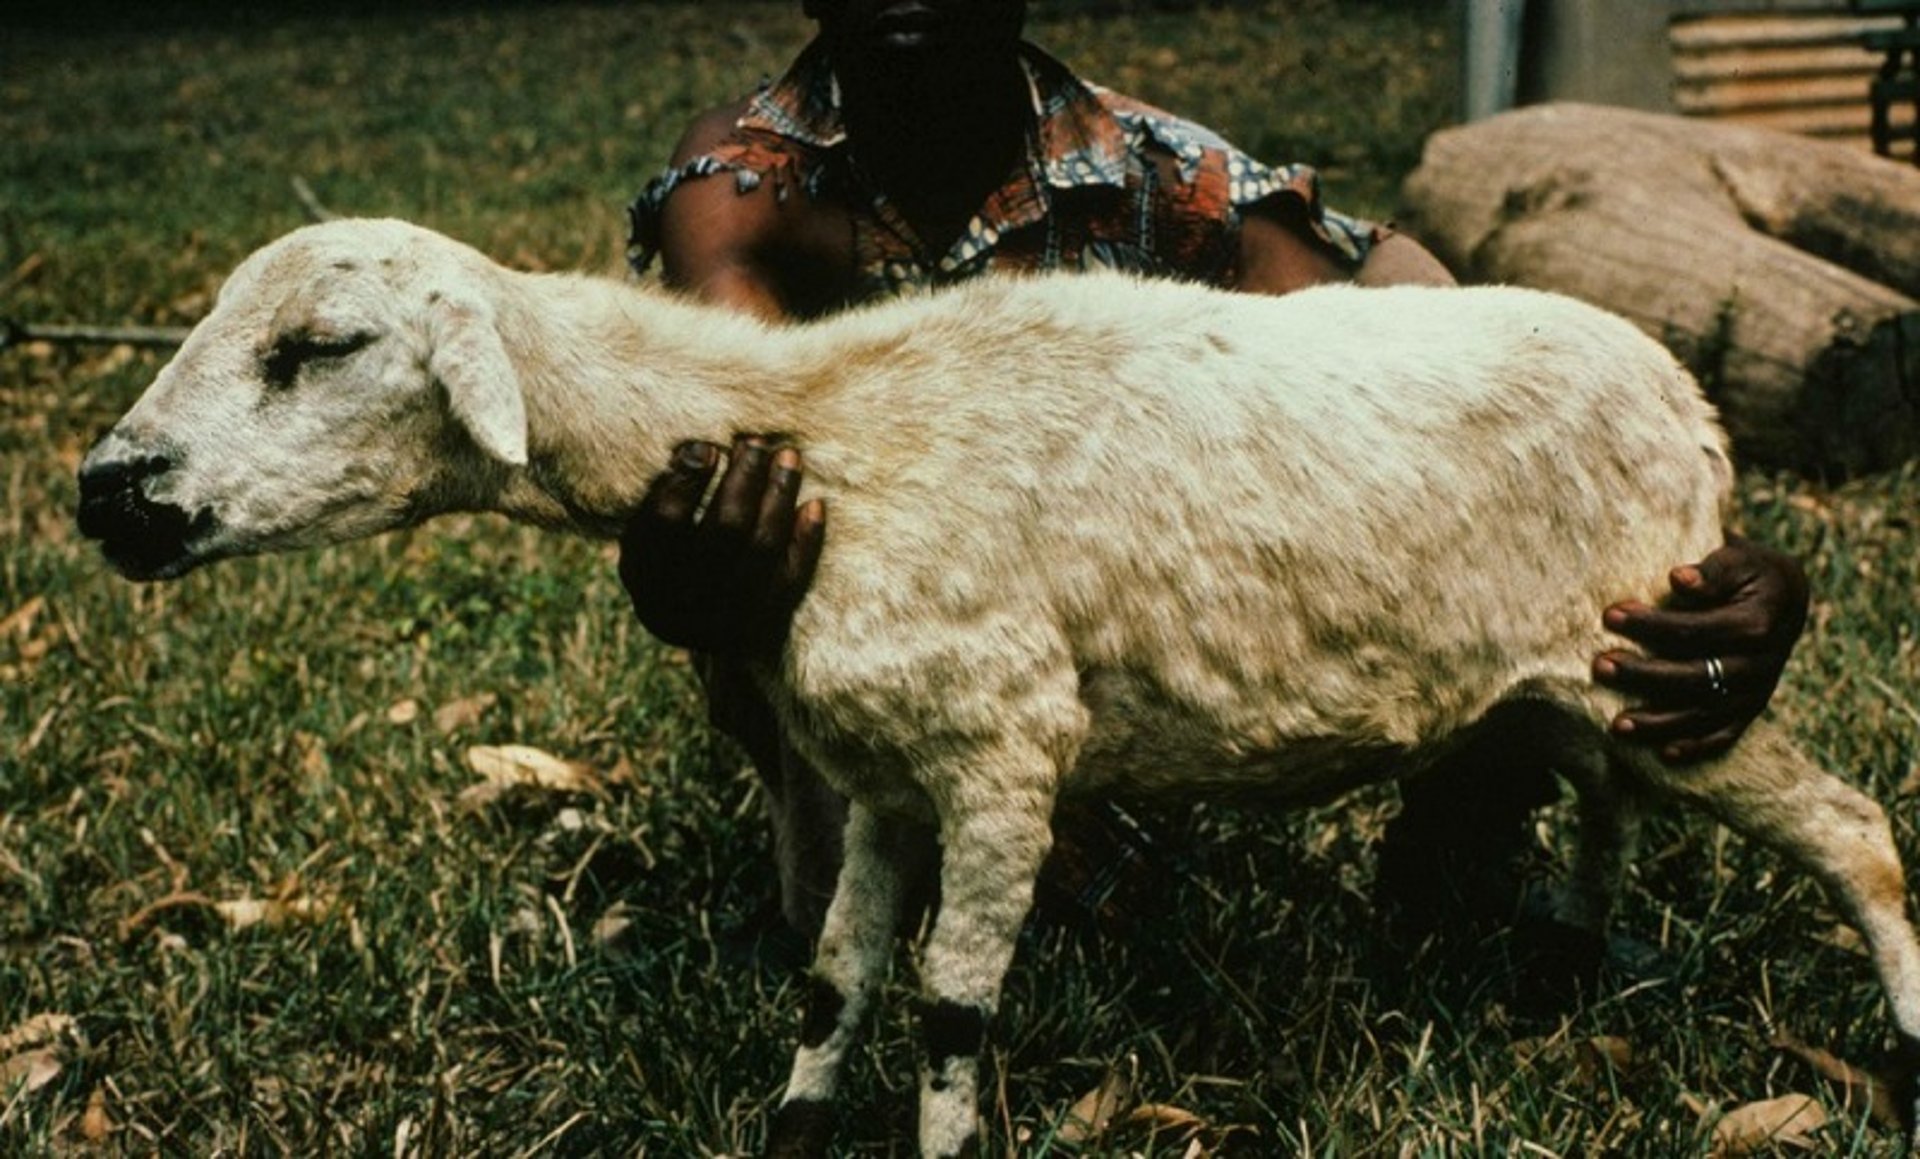 Sheeppox lesions